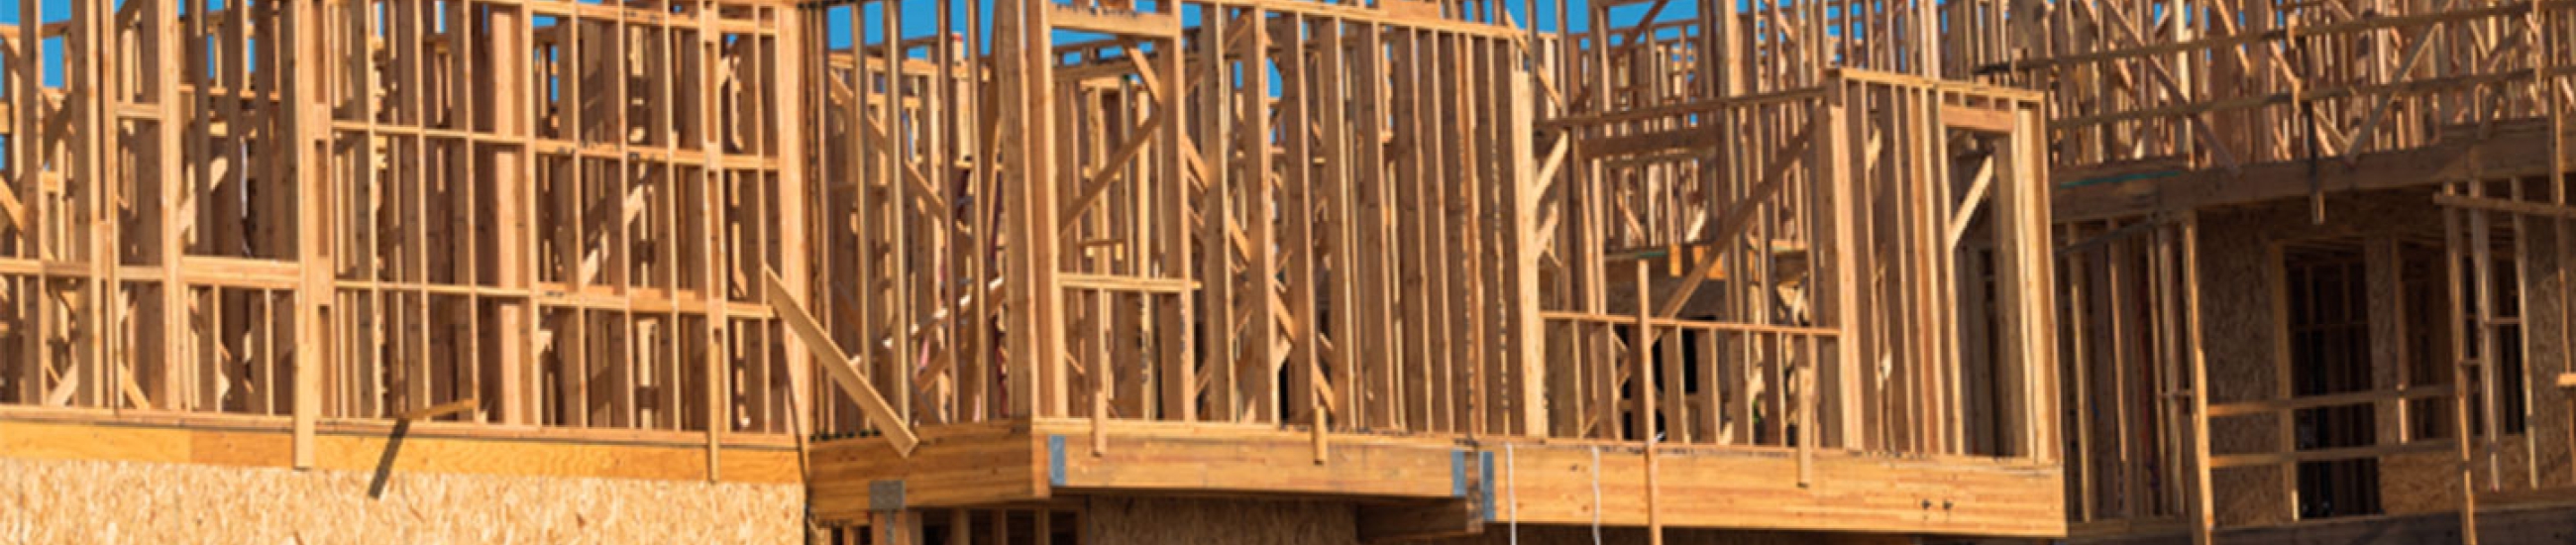 Éviter les dégradations des matériaux bois en chantier